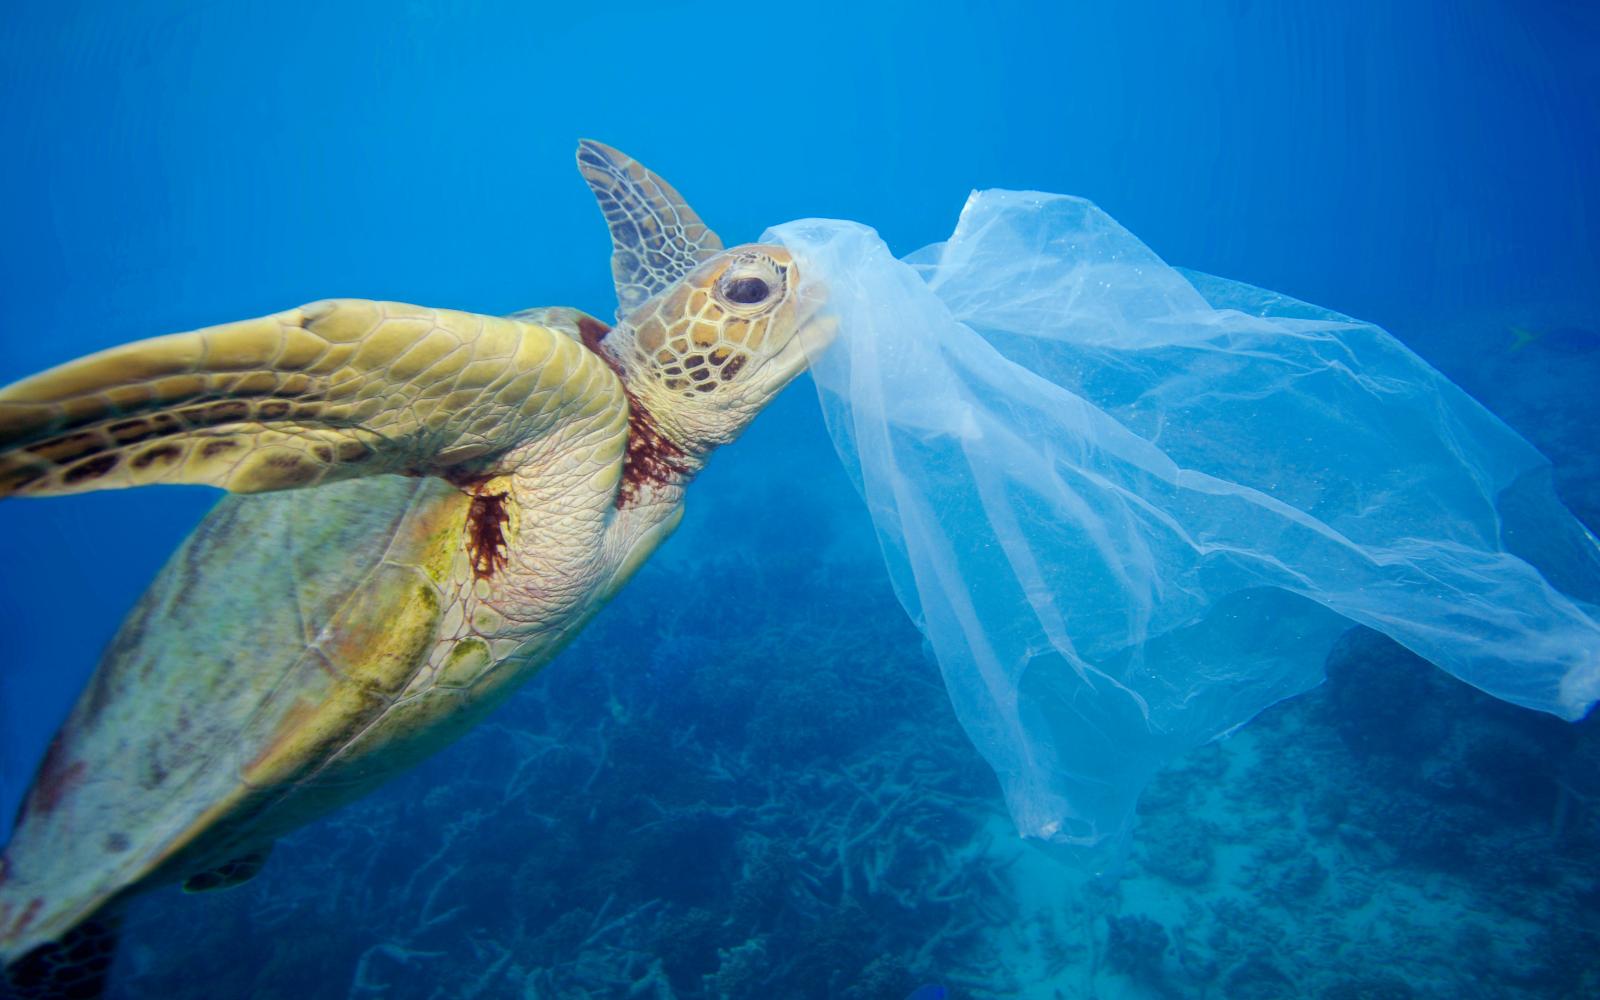 Tortue verte (Chelonia mydas) avec un sac en plastique près de la tête dans la Grande barrière de corail (Australie)